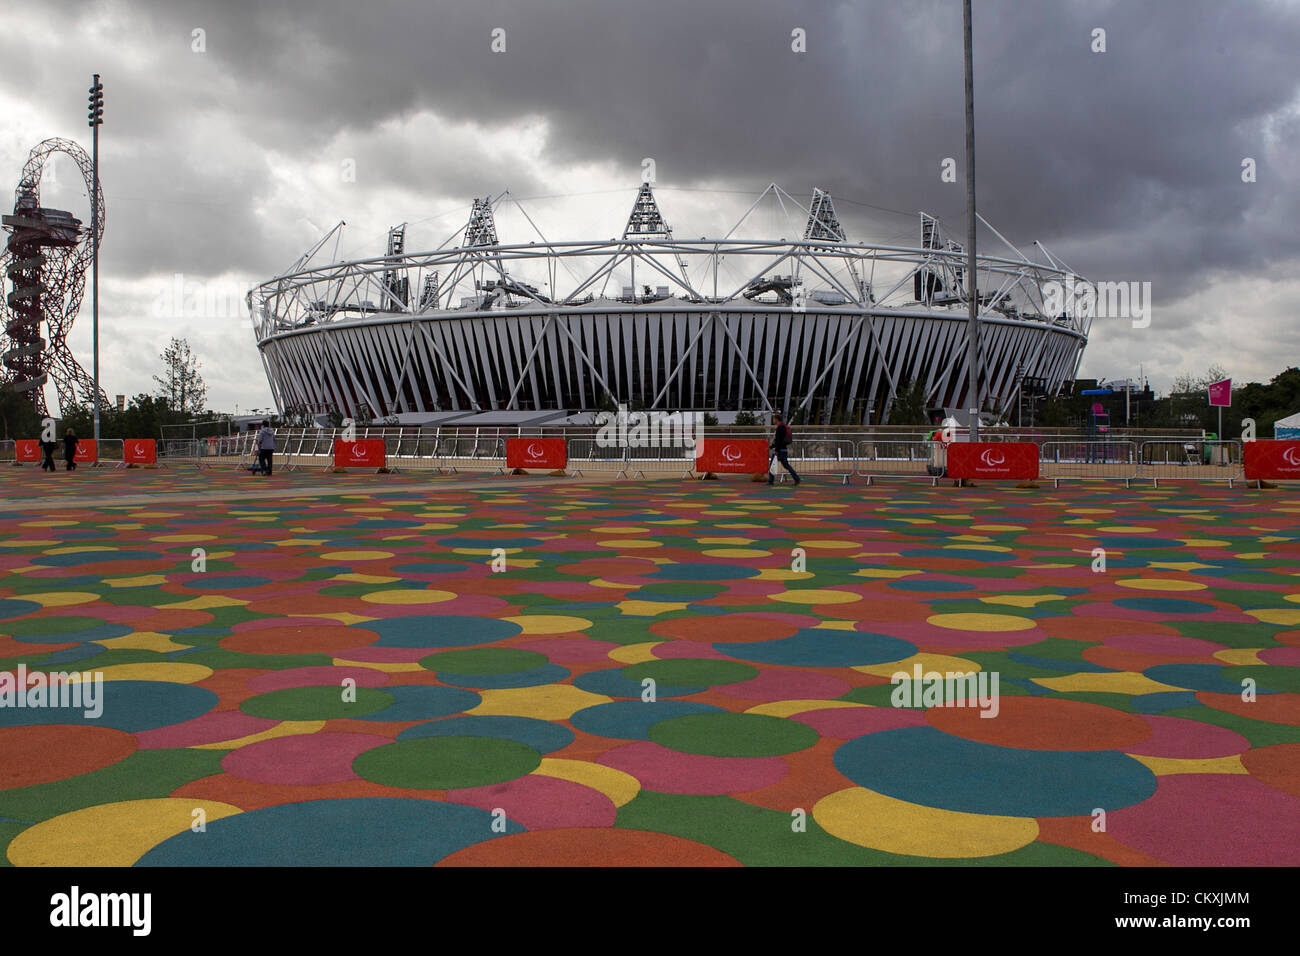 Stratford, London, UK. Mercredi 29 août 2012. Le stade olympique le jour de la cérémonie d'ouverture. Banque D'Images